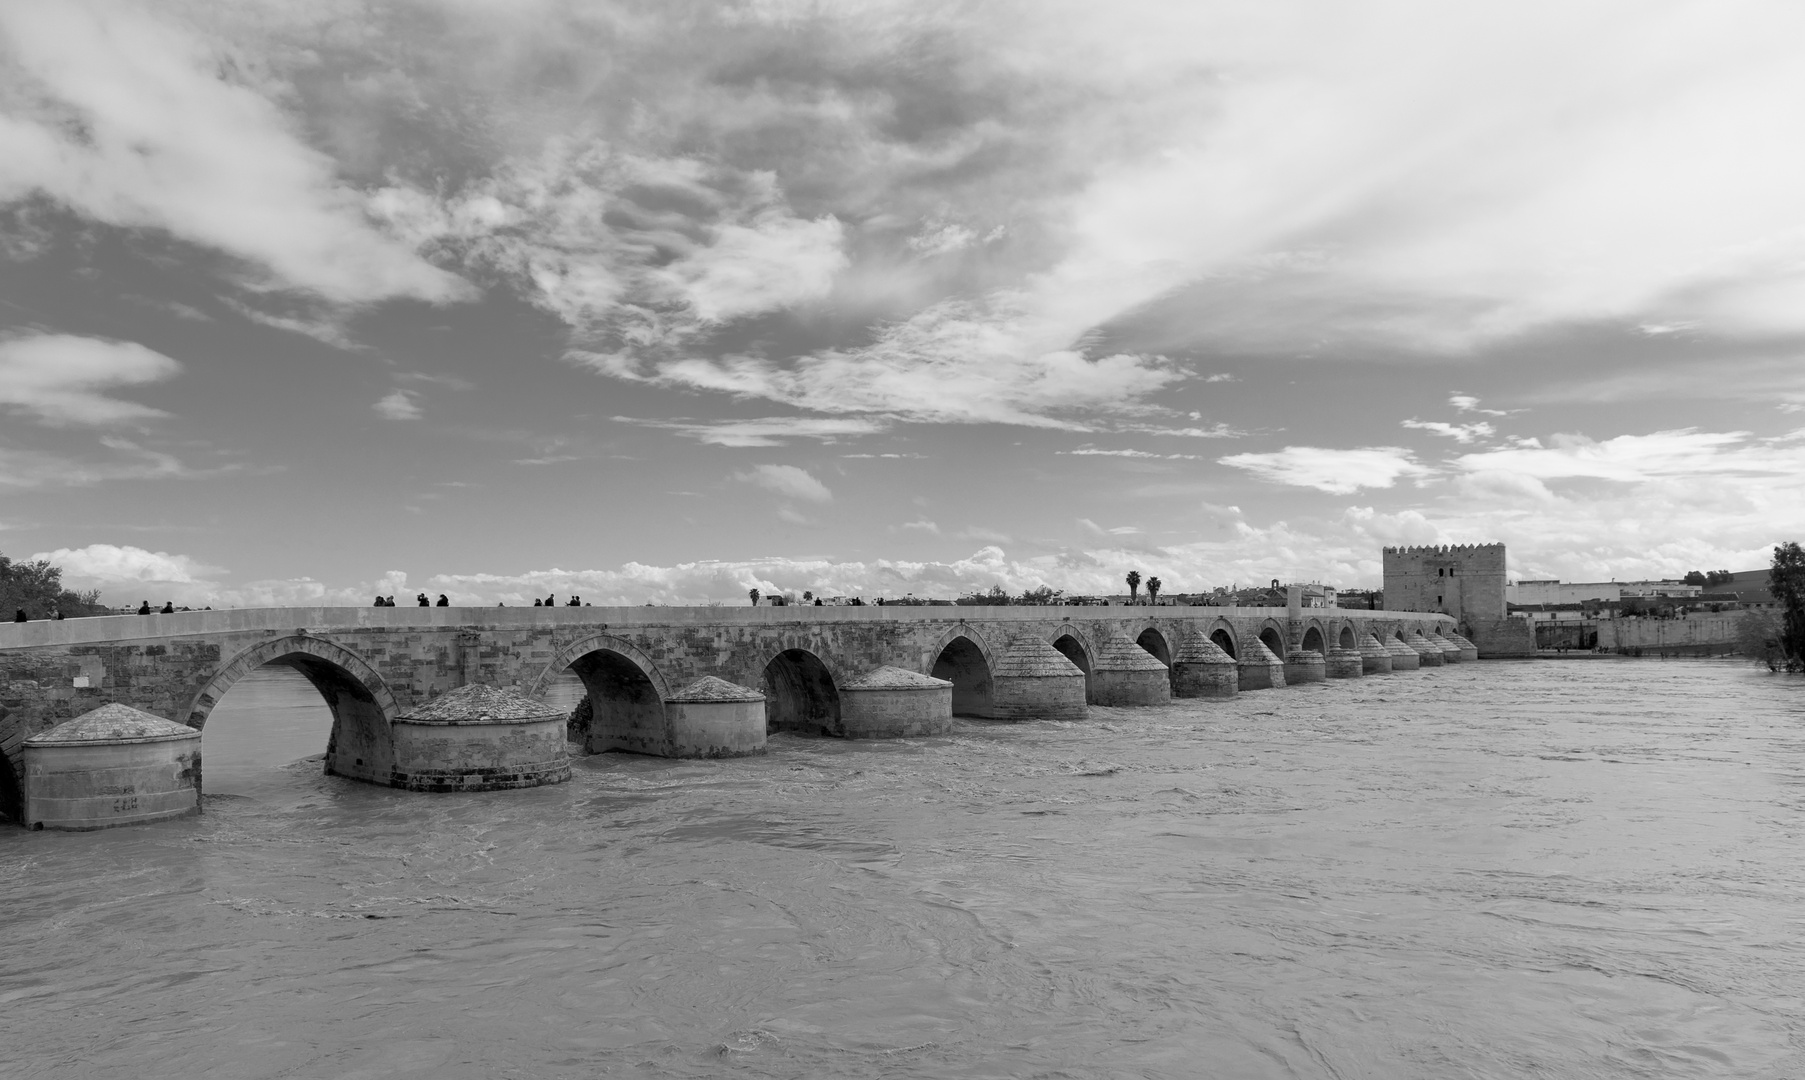 Römerbrücke in Cordoba